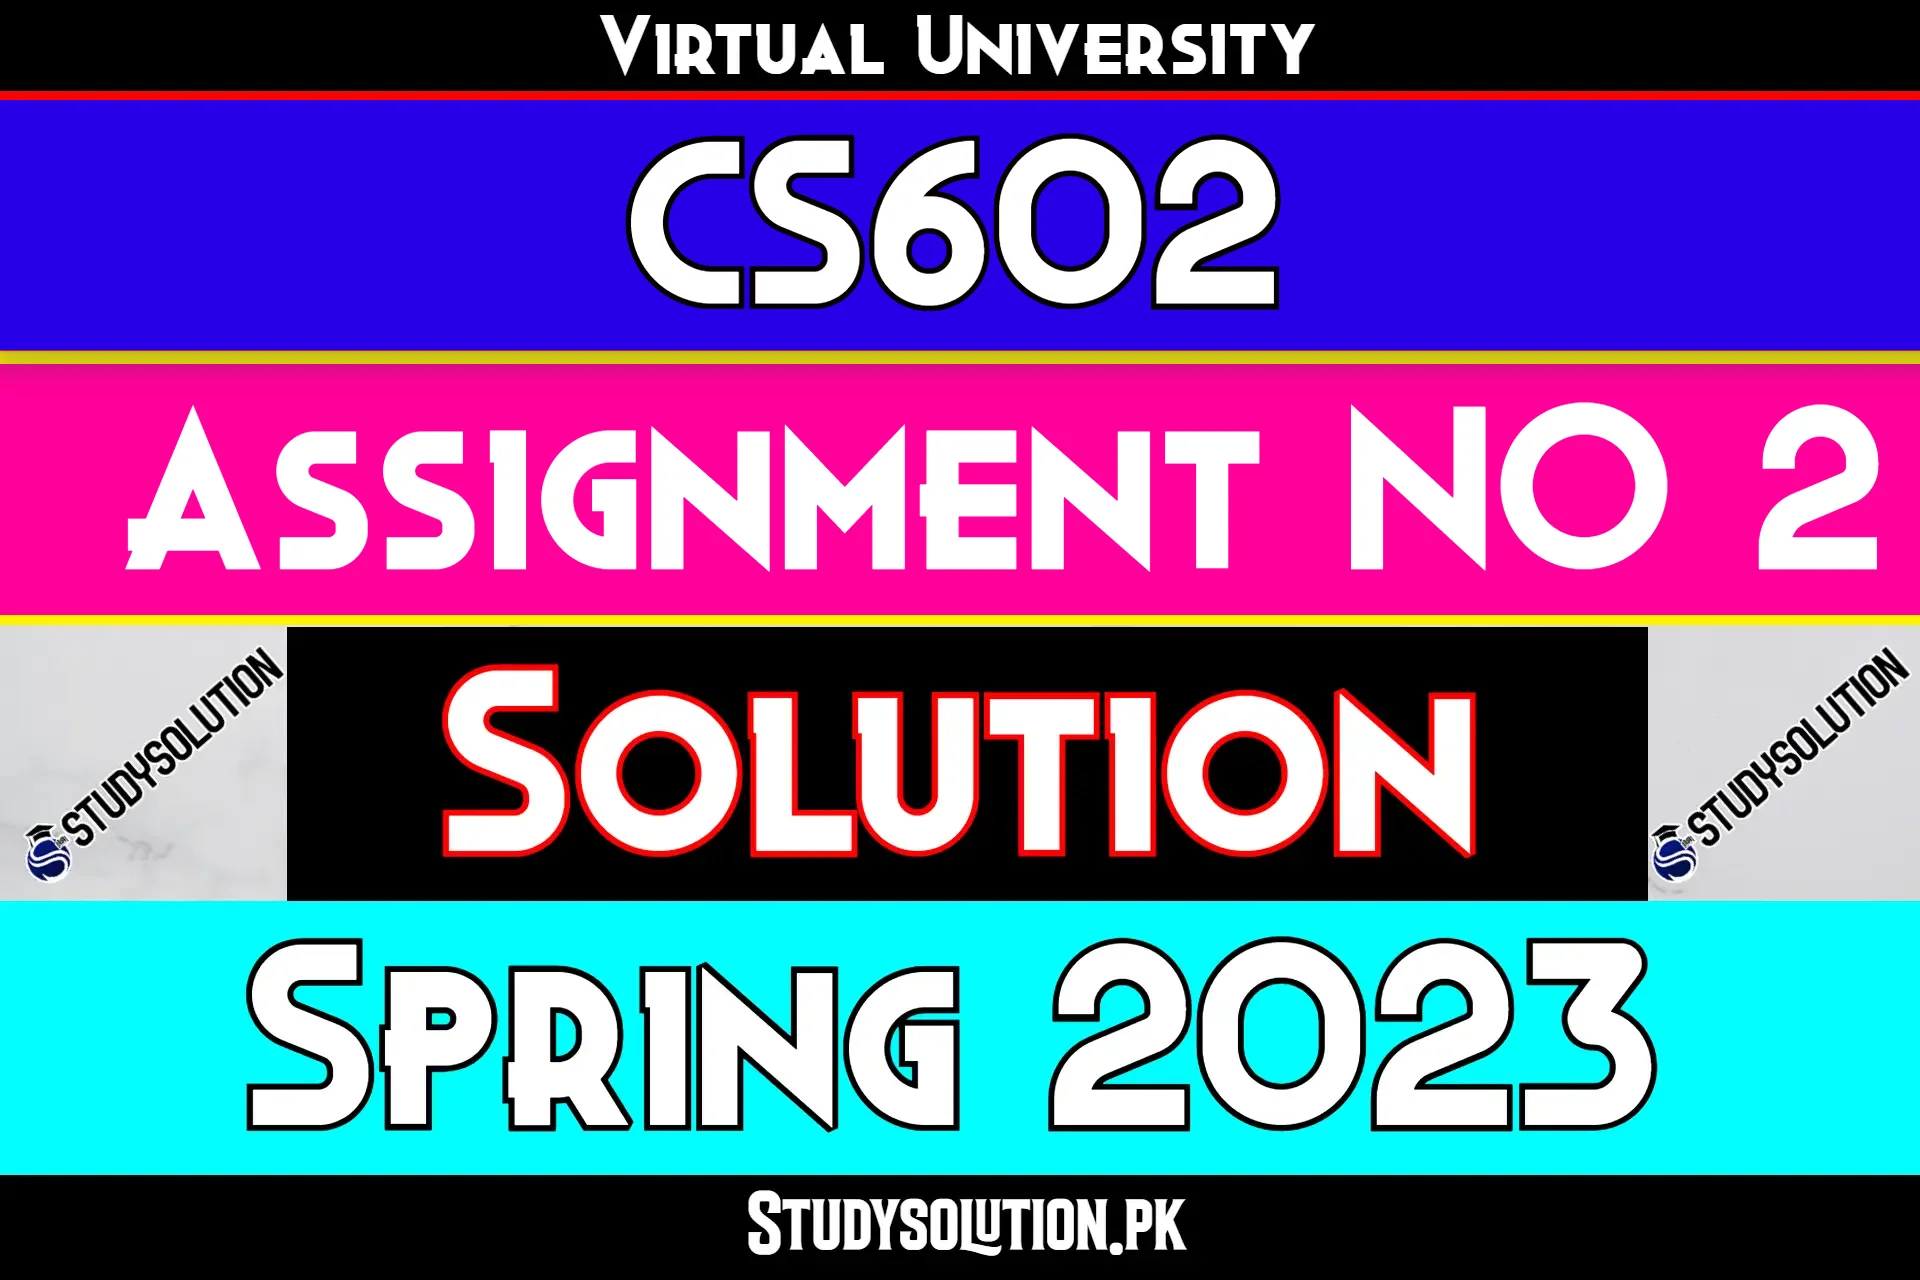 CS602 Assignment No 2 Solution Spring 2023